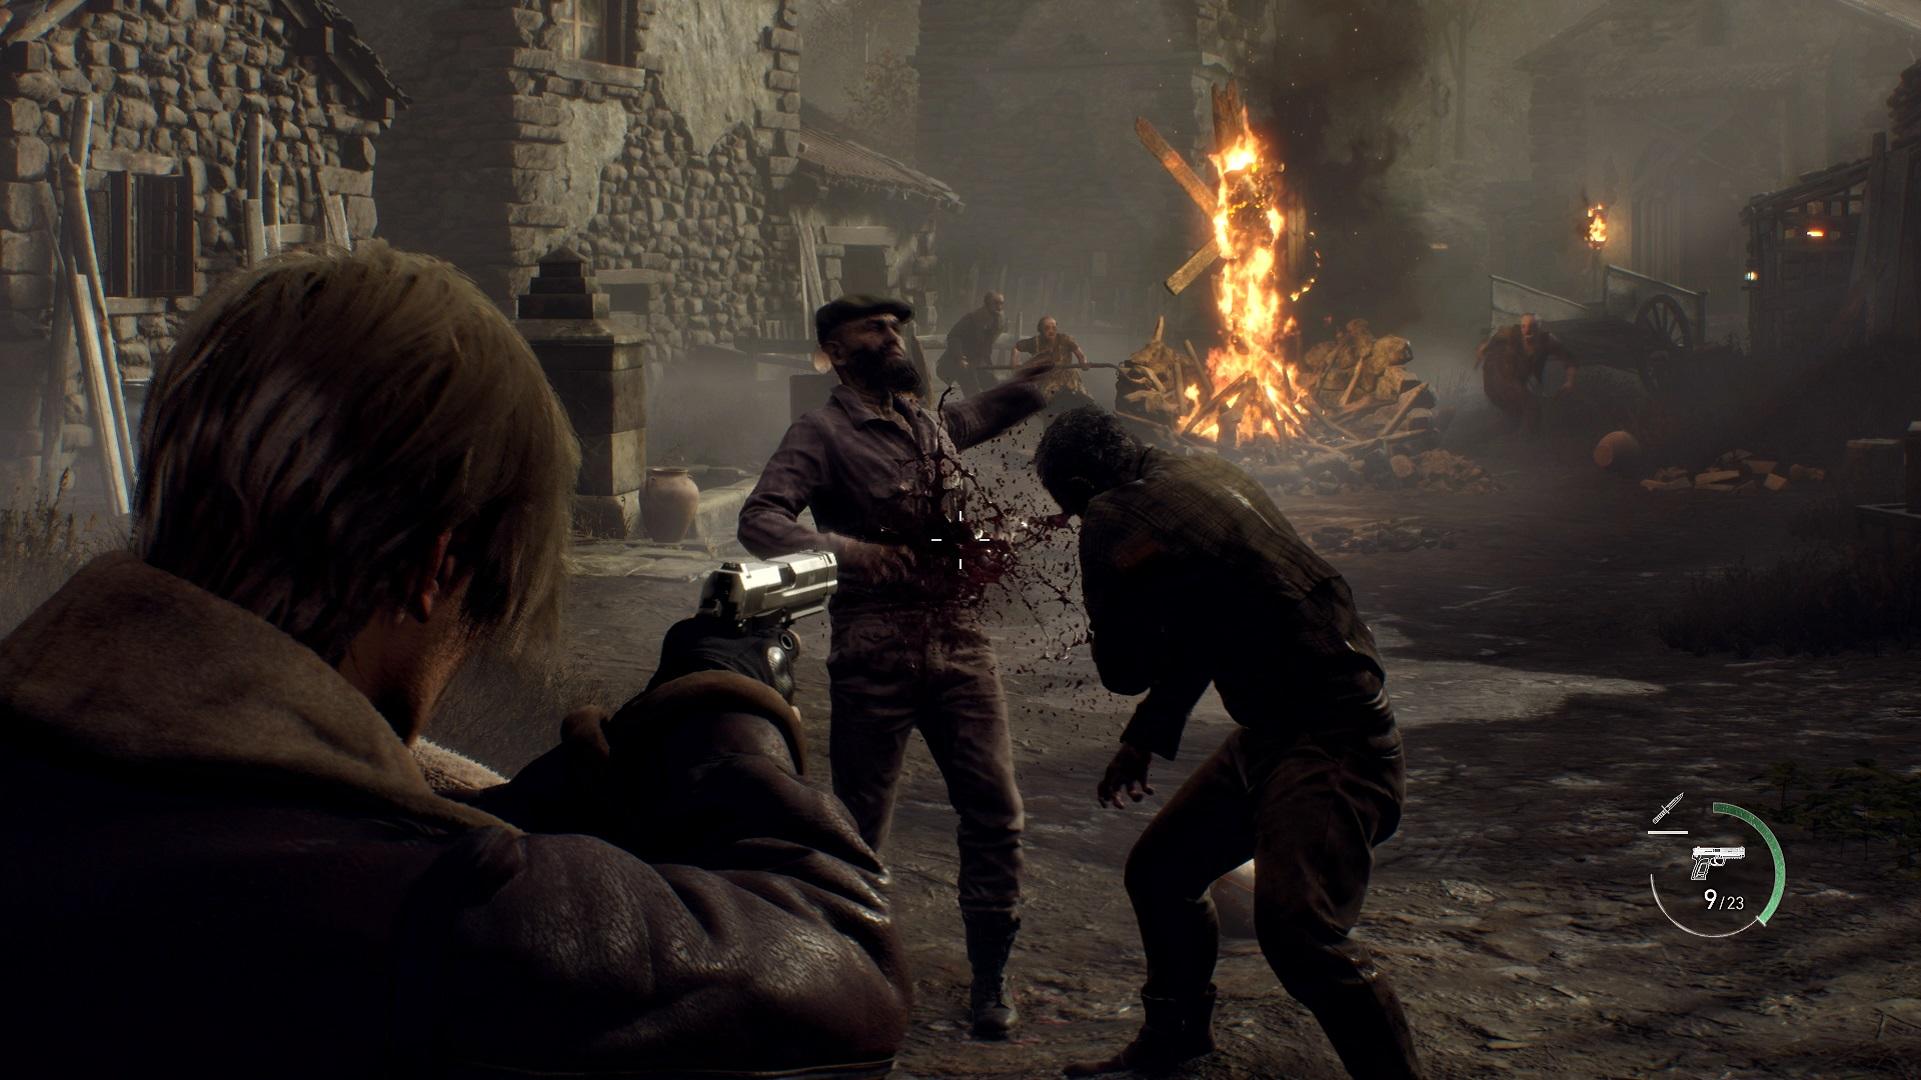 Resident Evil 4 Remake review arabgamerz عرب جيمرز مراجعة ريزدنت ايفل 4 ريميك 9